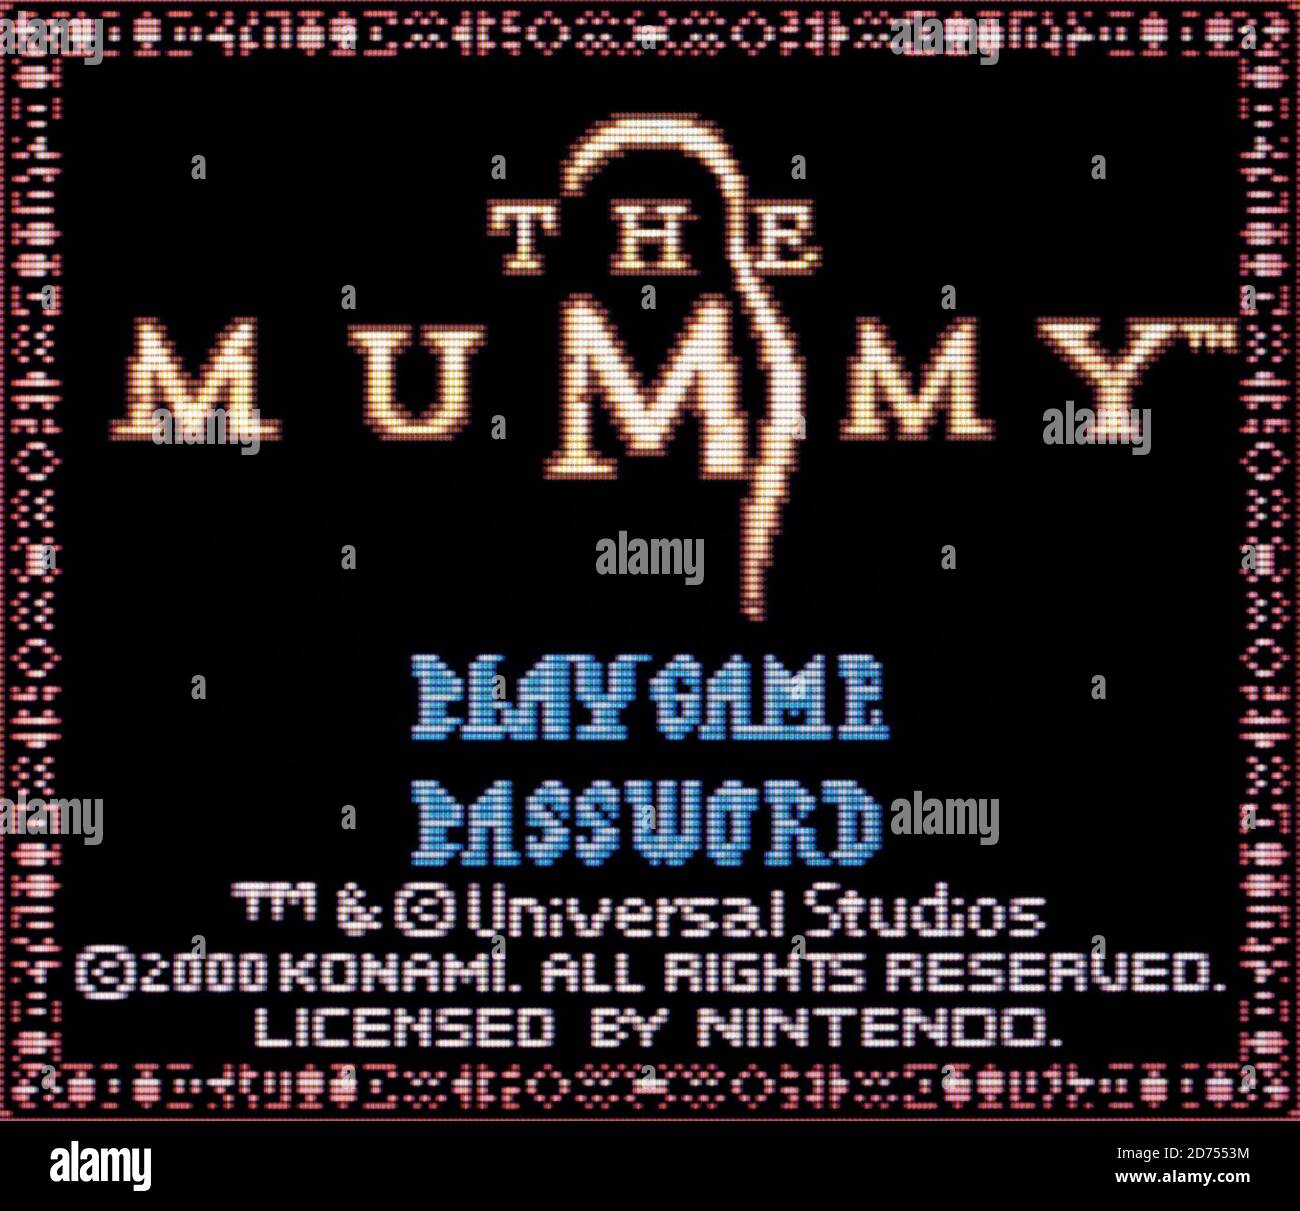 The Mummy - Nintendo Game Boy Color Videogame - Editorial à utiliser uniquement Banque D'Images